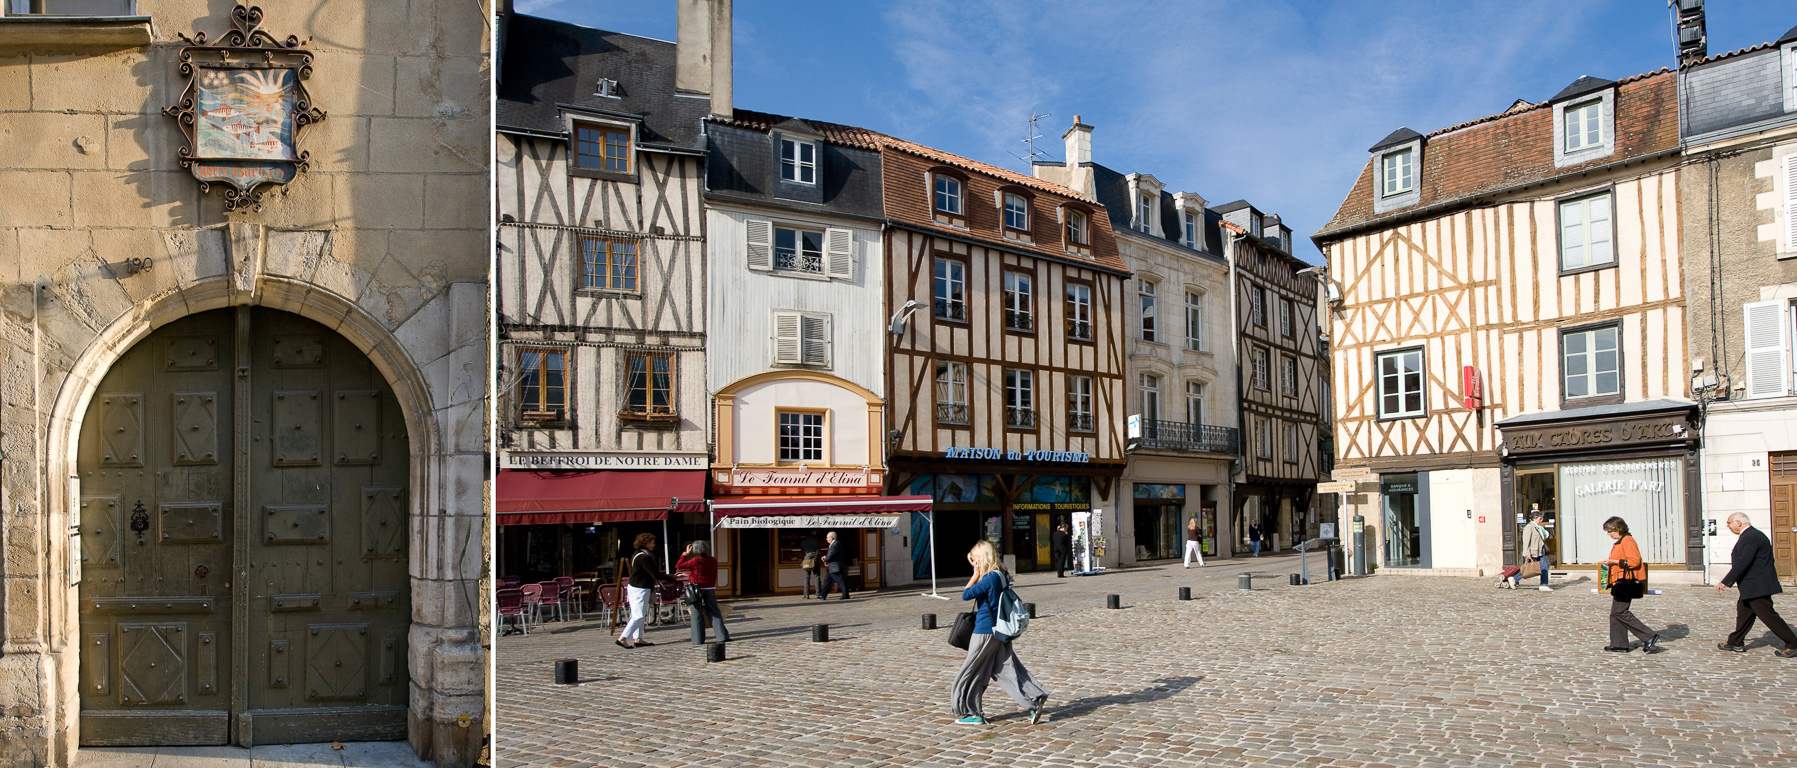 Grande Rue N°190 Hôtel particulier Barbarin du XVIème siècle. et Place Charles de Gaulle avec ses maisons à colombages.